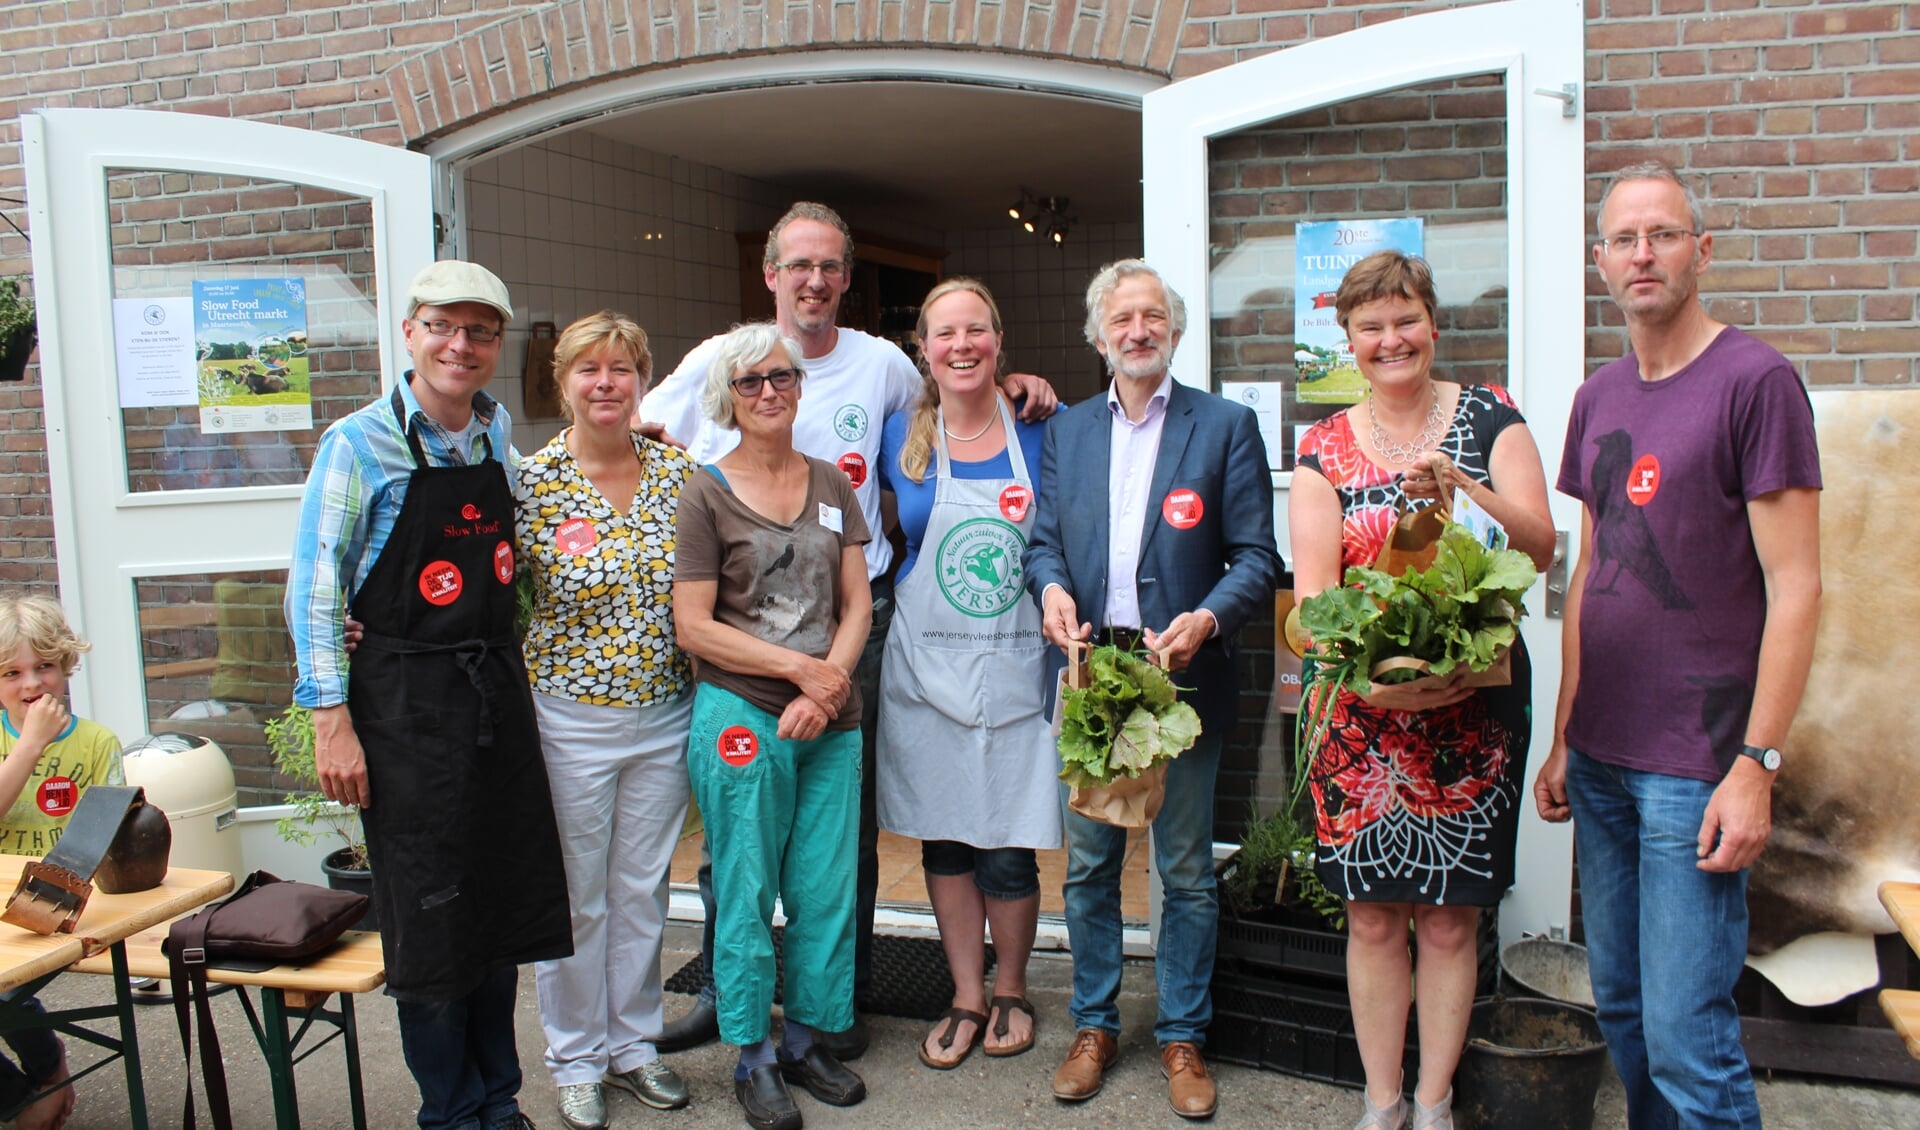  Wethouder Anne Brommersma en Otto van Boetzelaer hebben een biologisch groentepakket overhandigd gekregen.